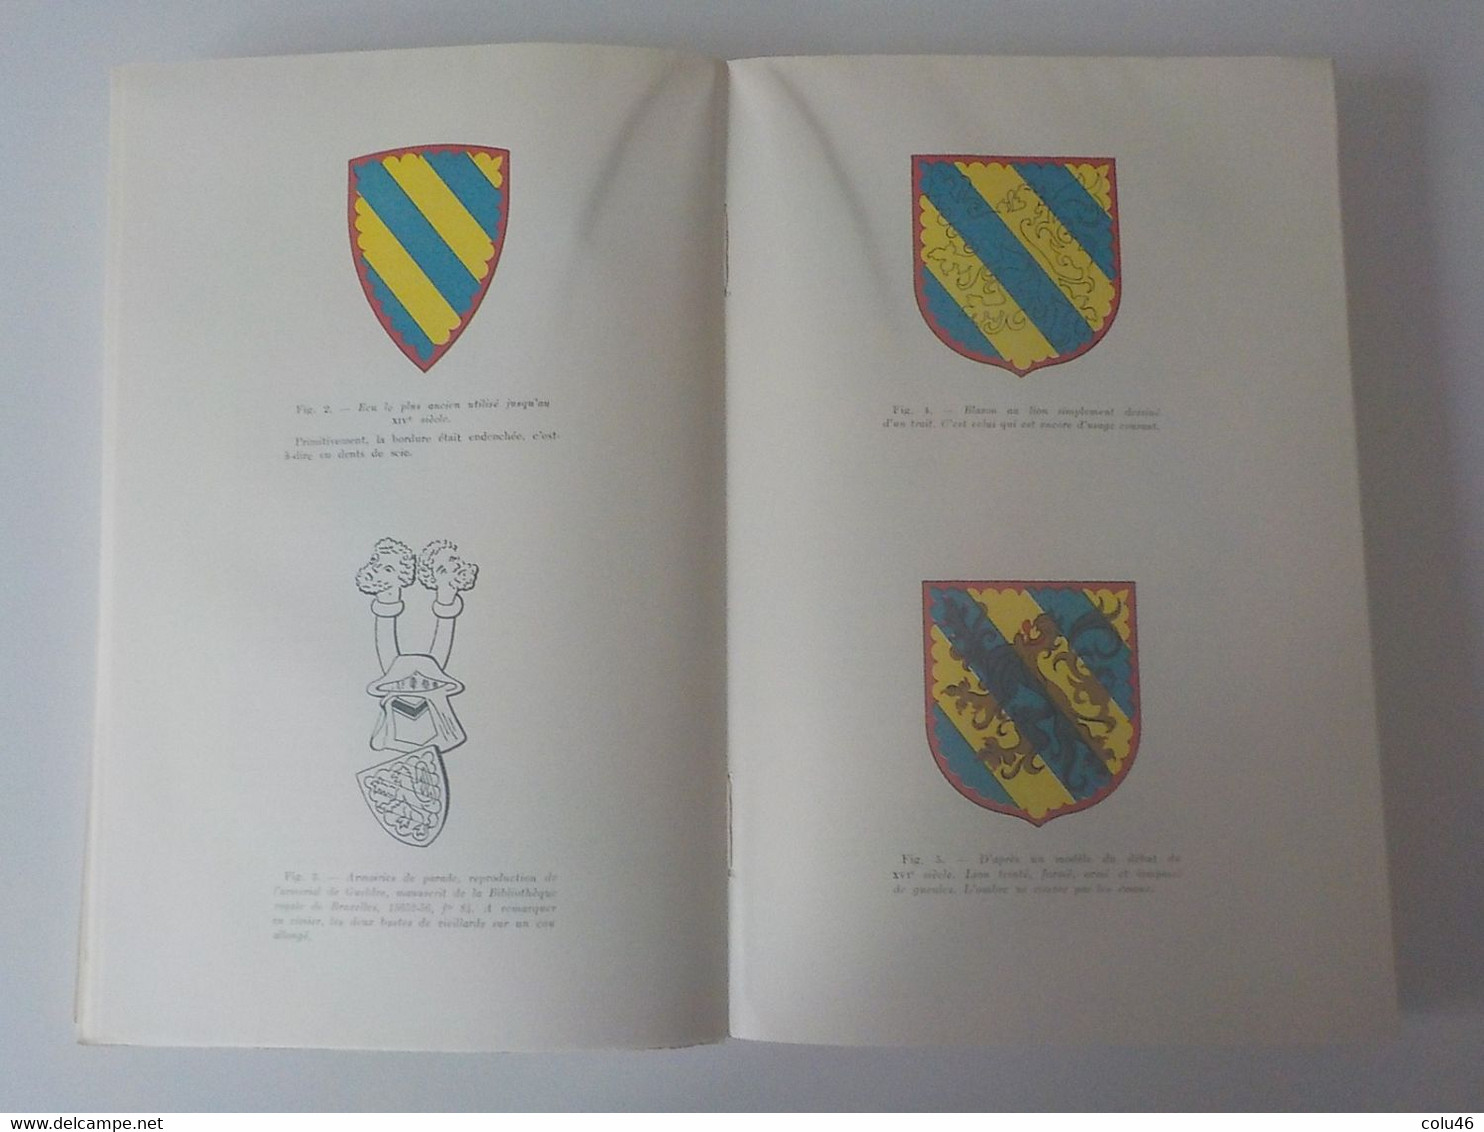 1959 Courcelles livre Les Seigneurs de Trazegnies au Moyen-Age + arbres généalogiques Curé Mont-Sainte Geneviève